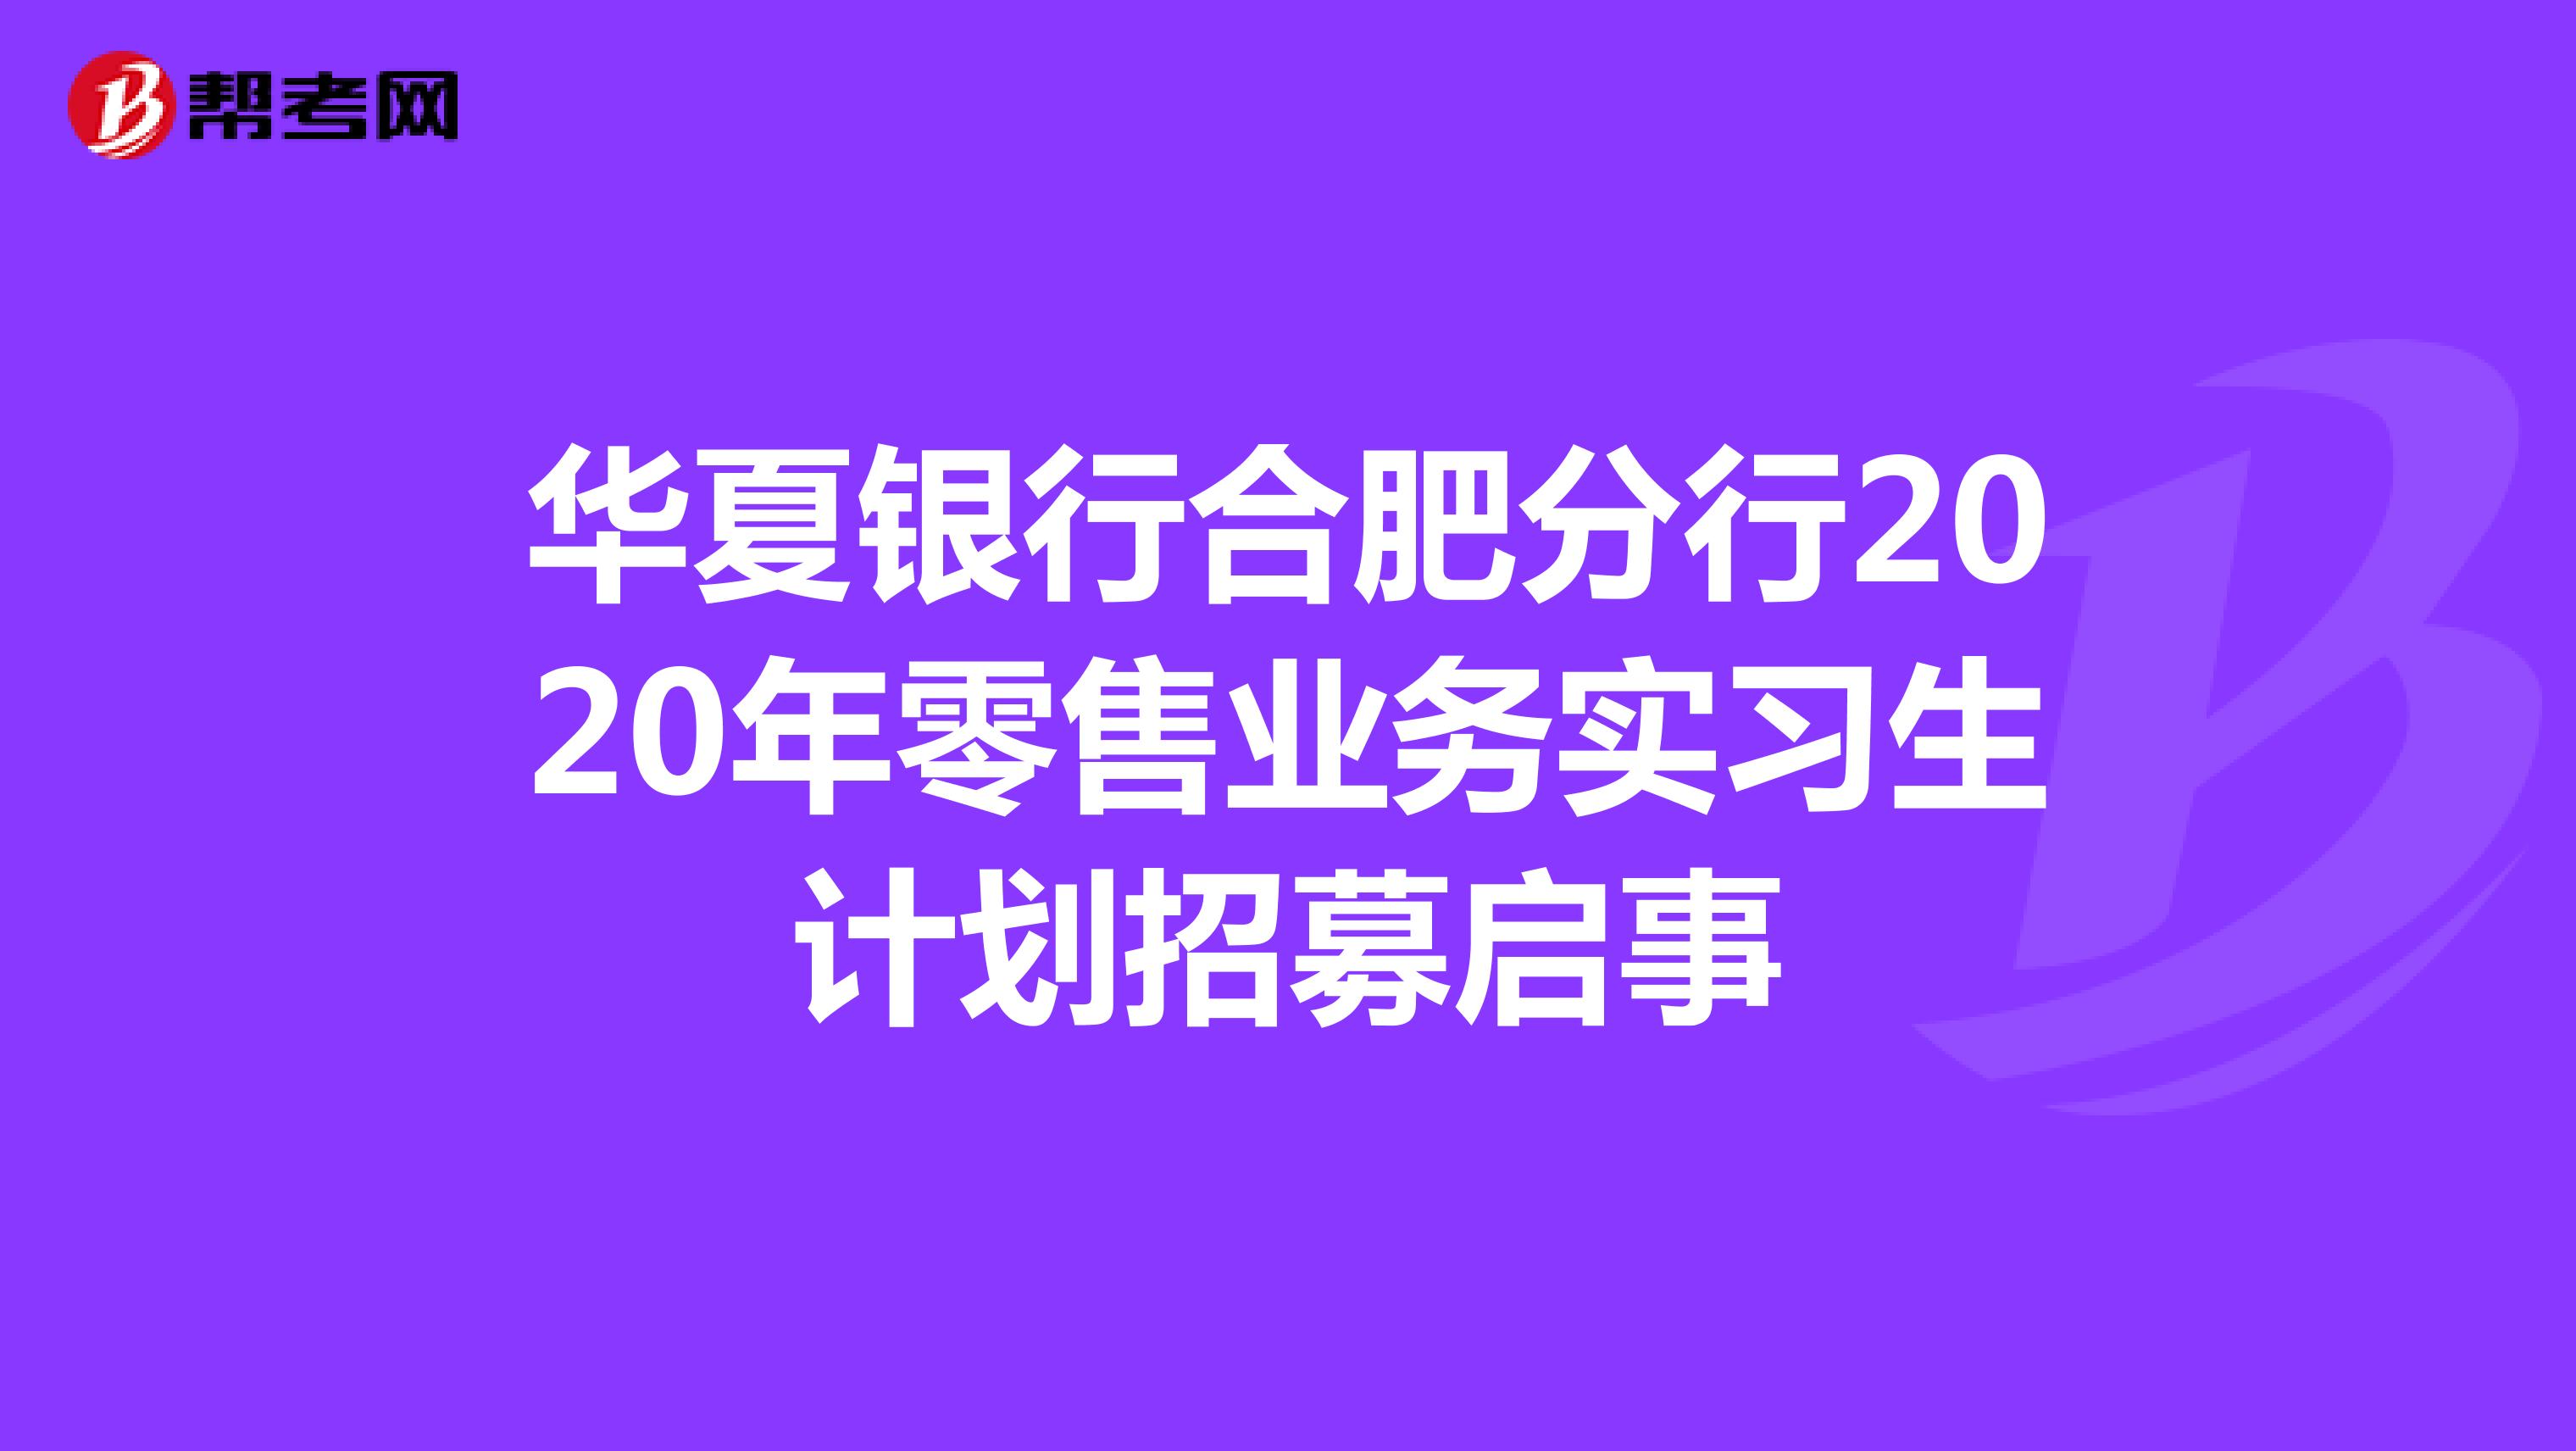 华夏银行合肥分行2020年零售业务实习生计划招募启事